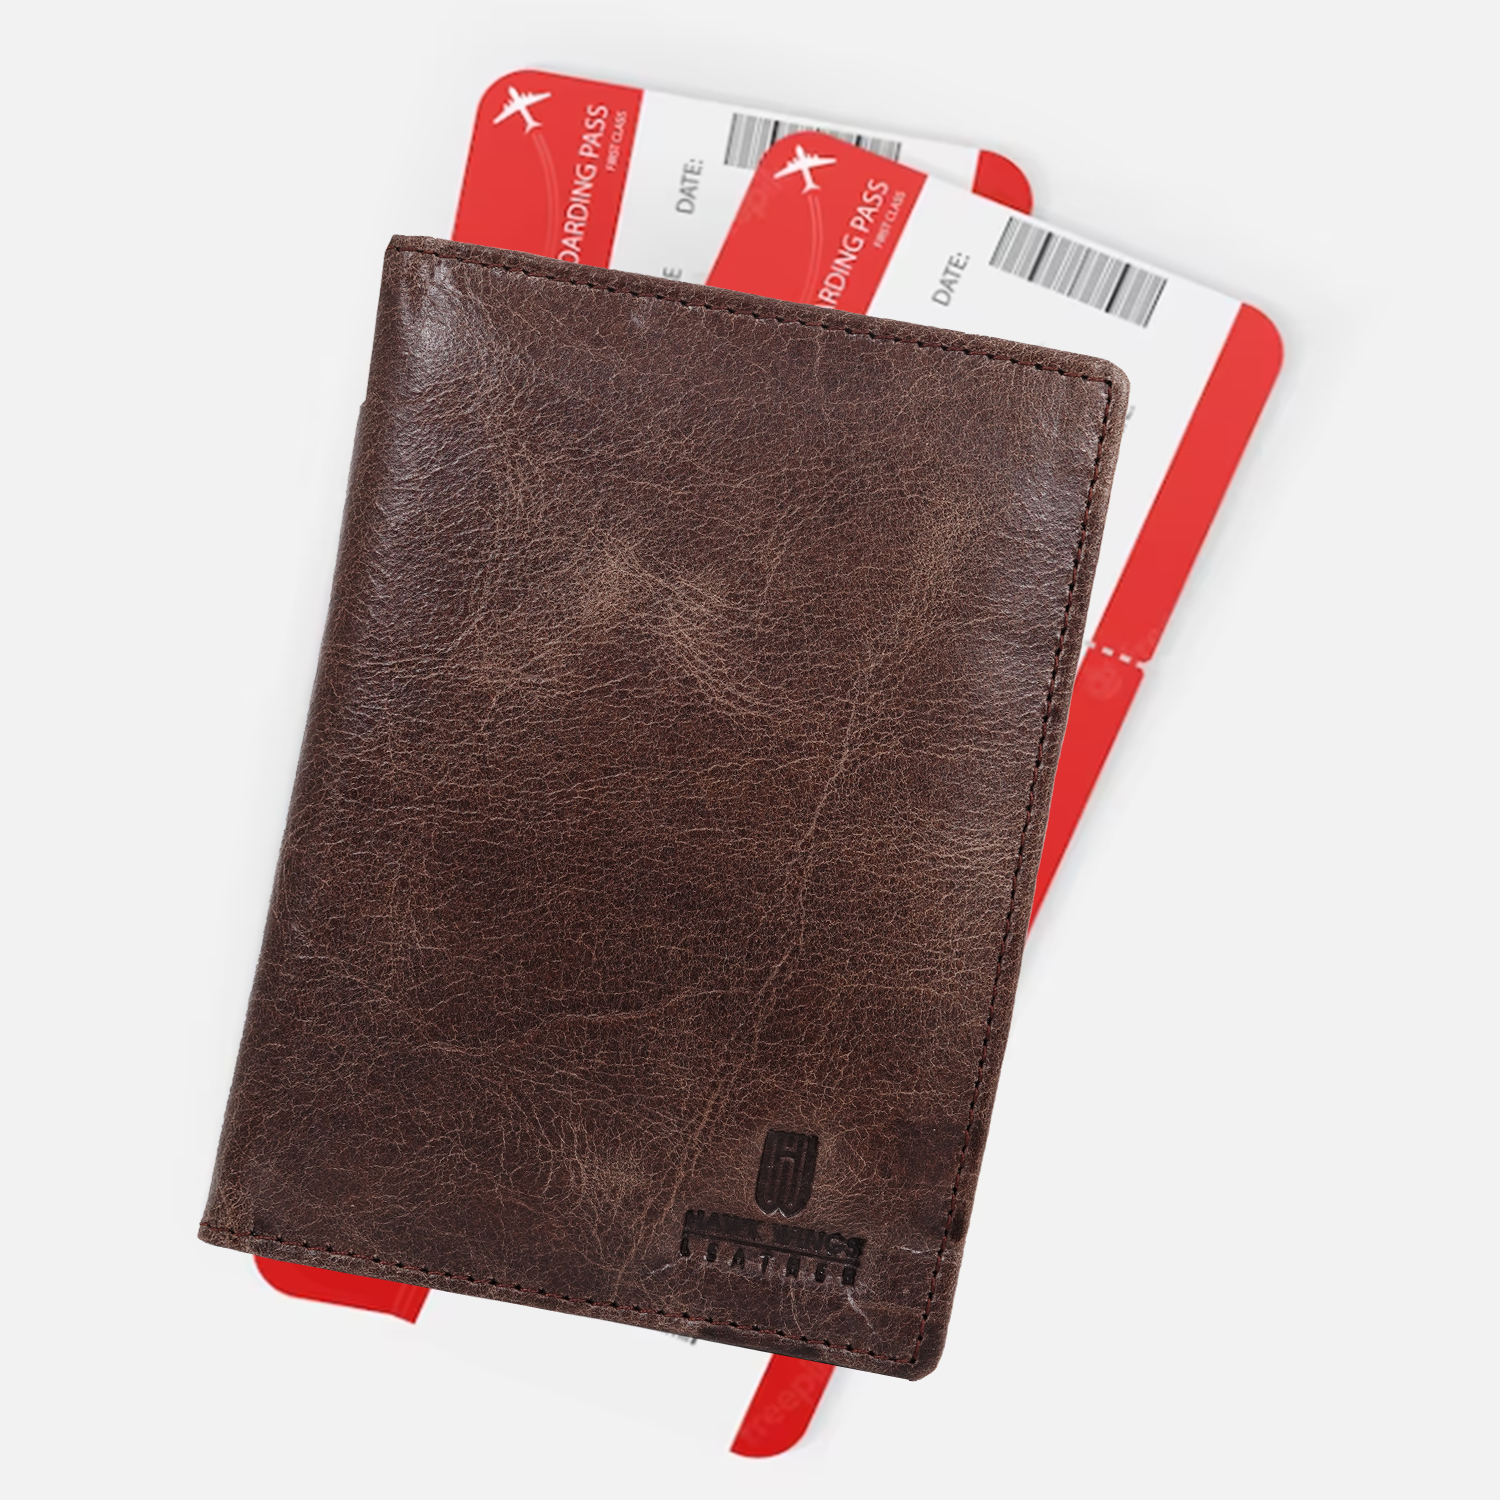 Genuine Leather  Card Holder||Travel Passport Holder||Travel Document Holder||Passport Cover For Men&Women ( BROWN)-asset-605